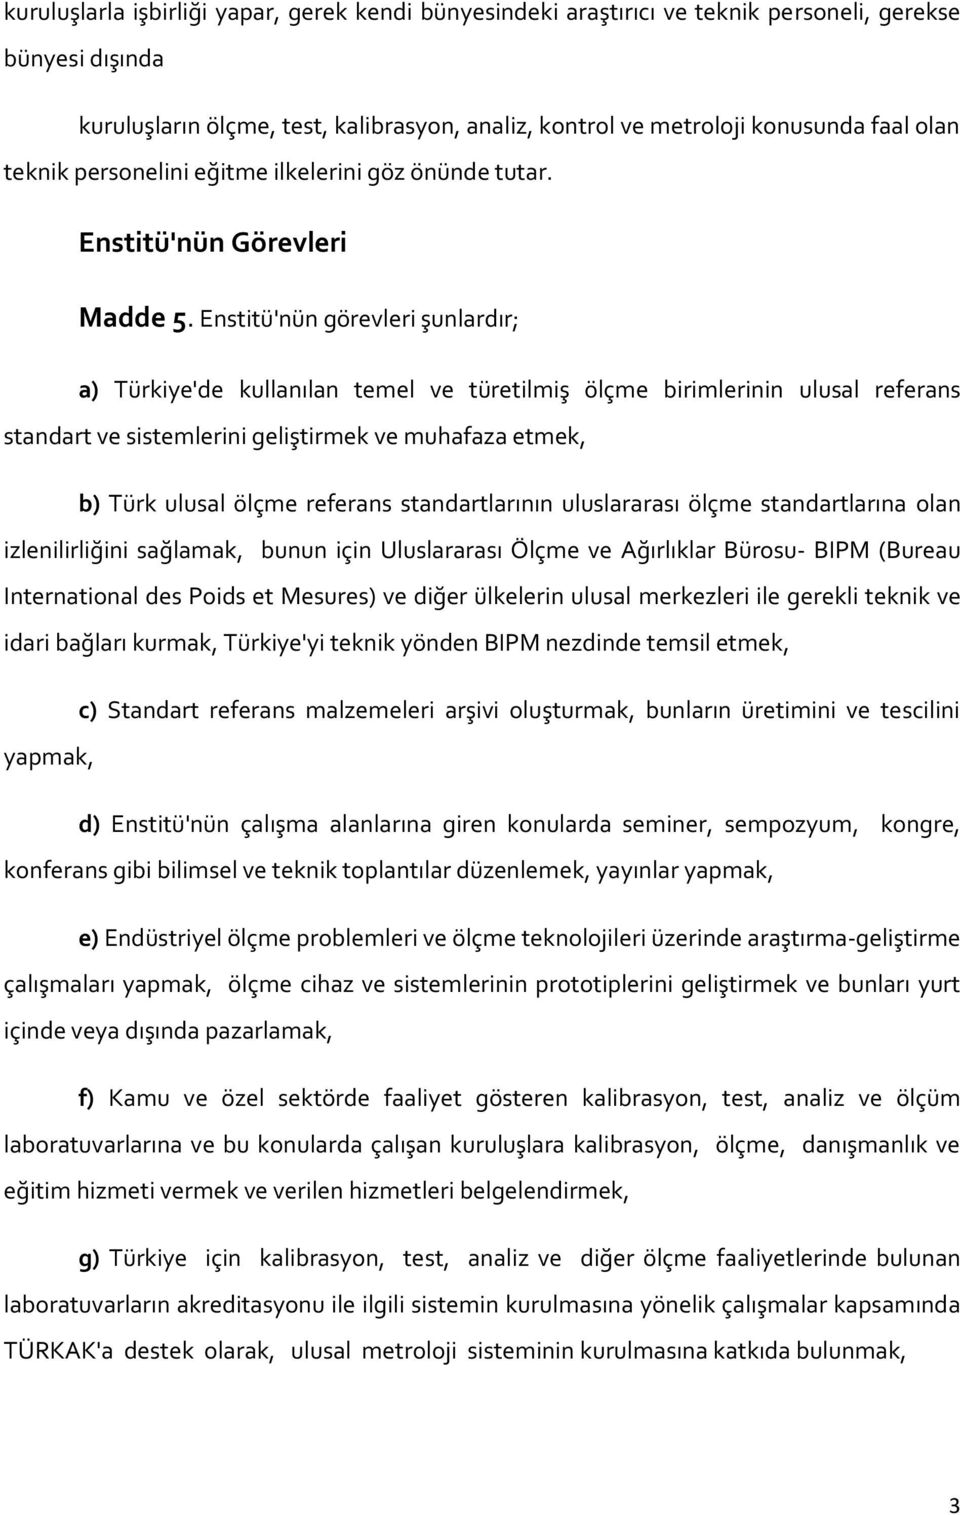 Enstitü'nün görevleri şunlardır; a) Türkiye'de kullanılan temel ve türetilmiş ölçme birimlerinin ulusal referans standart ve sistemlerini geliştirmek ve muhafaza etmek, b) Türk ulusal ölçme referans